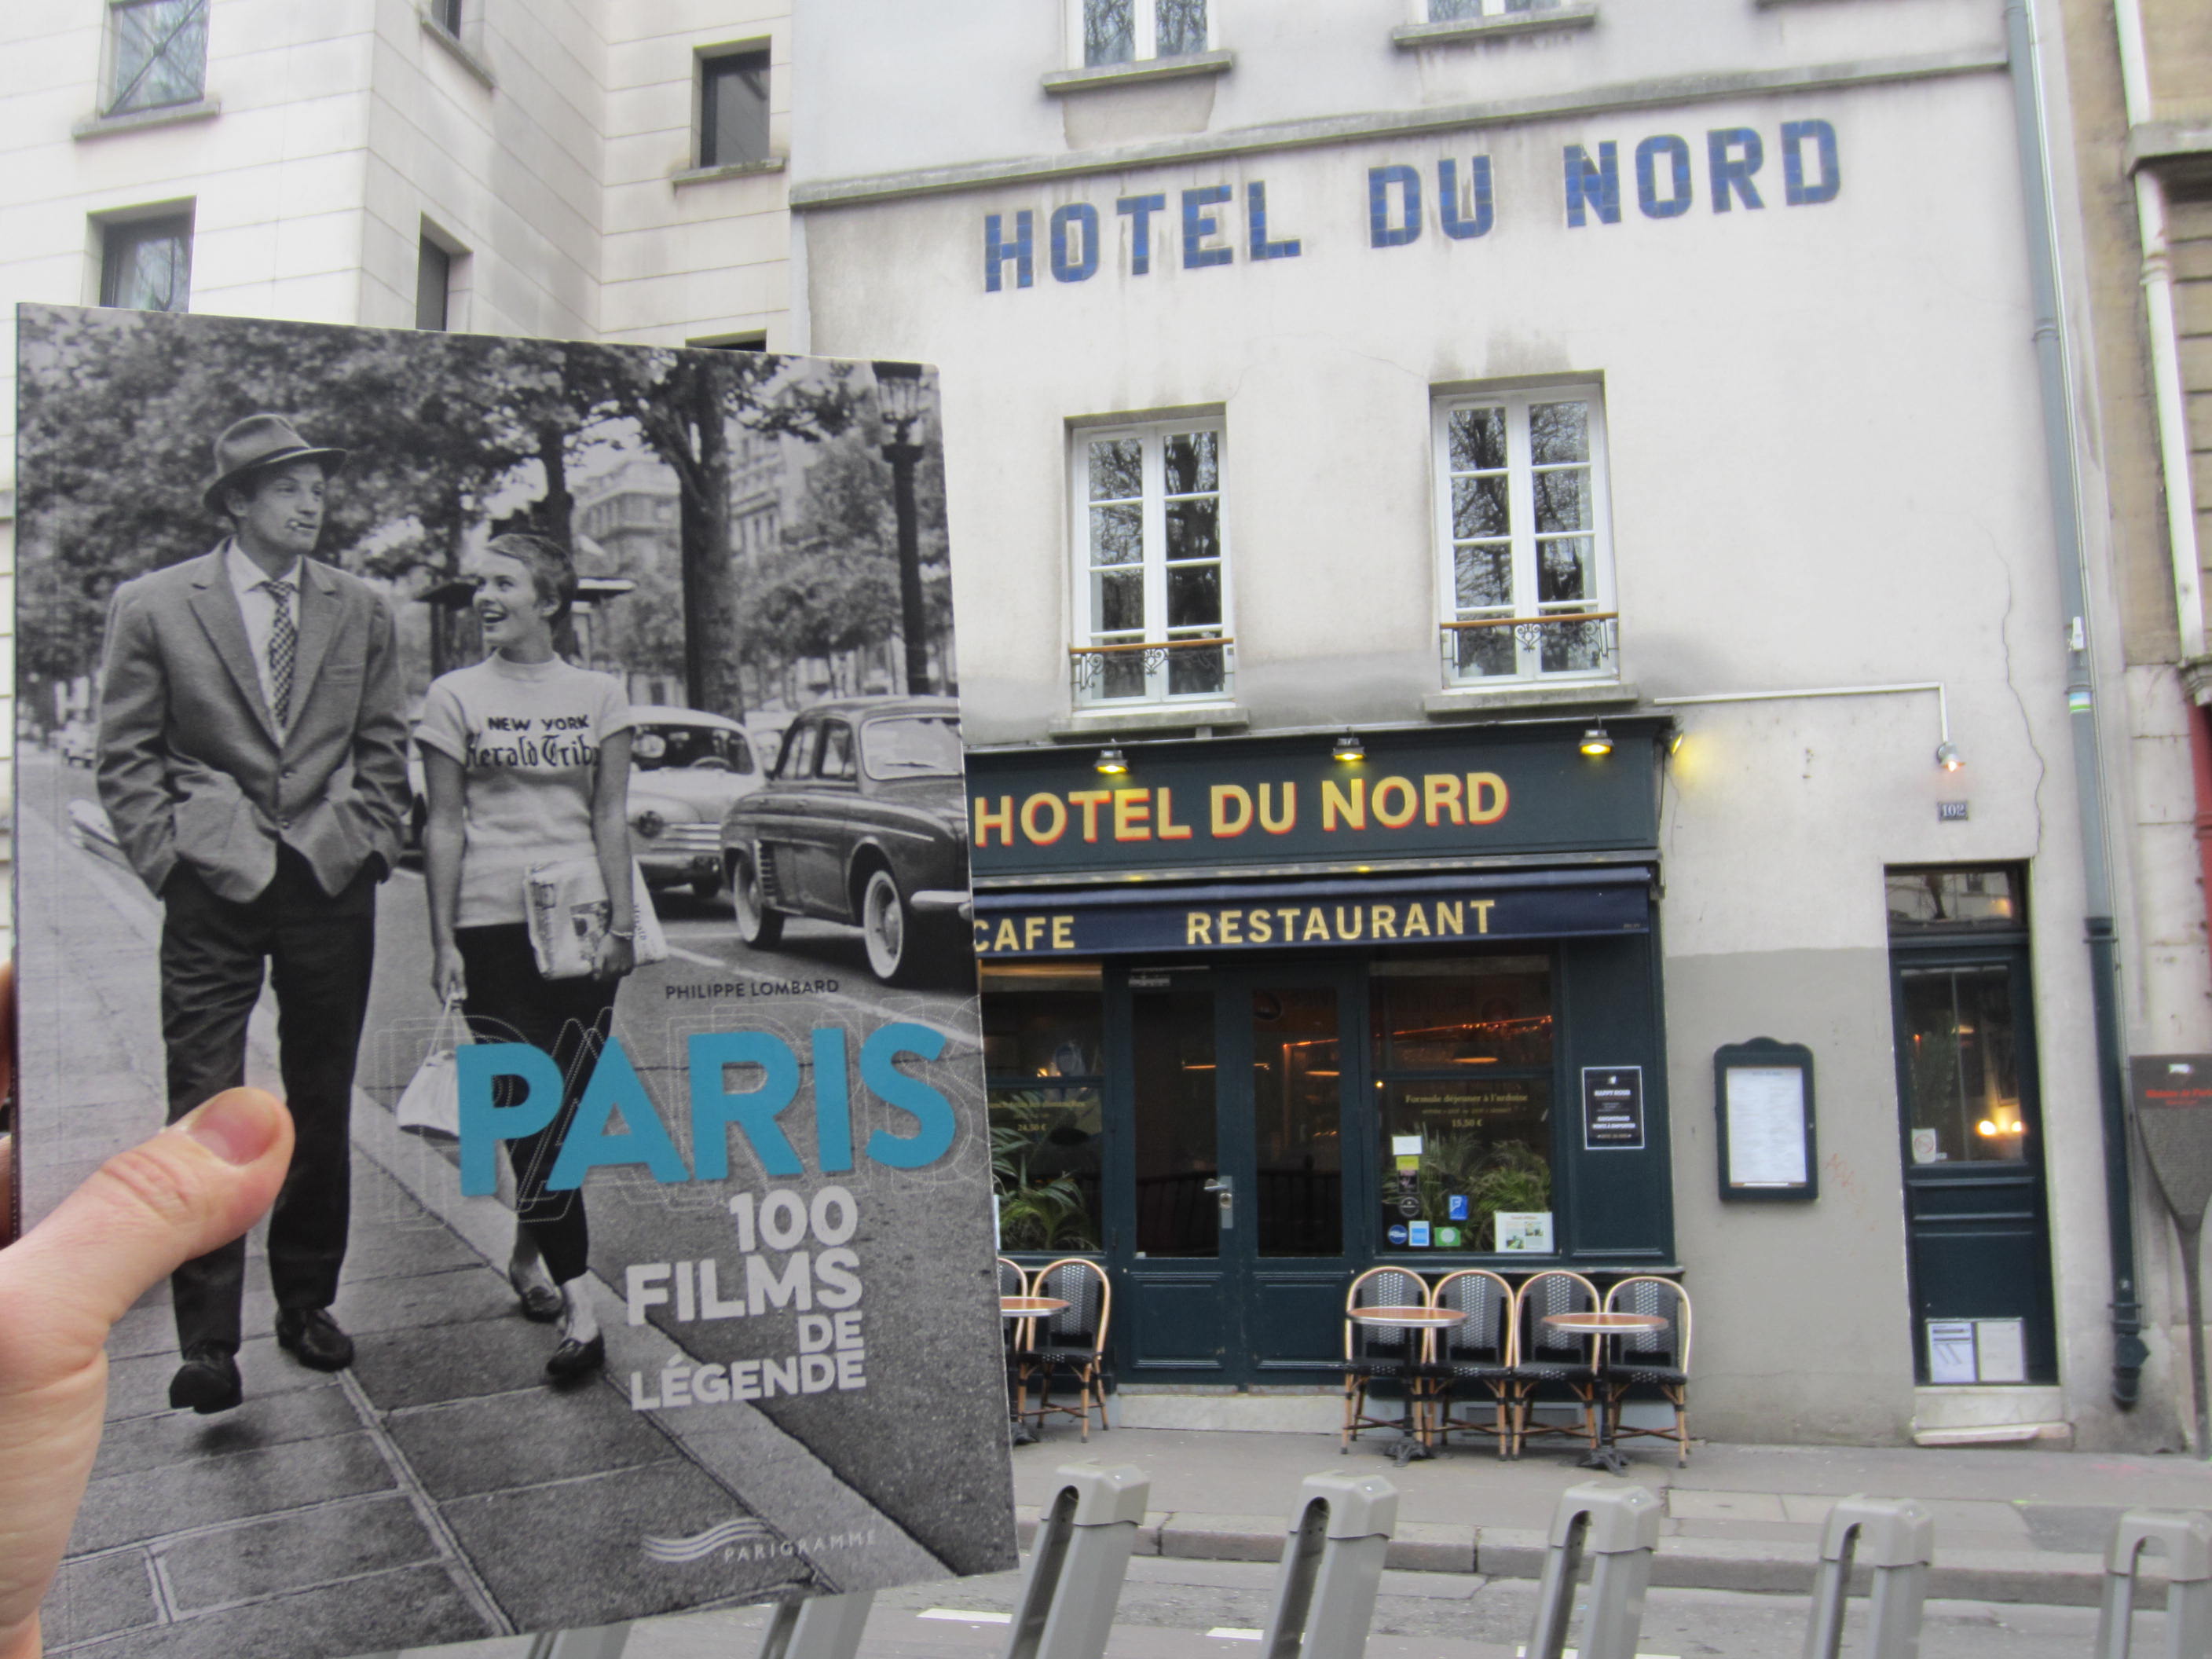 Paris 100 films